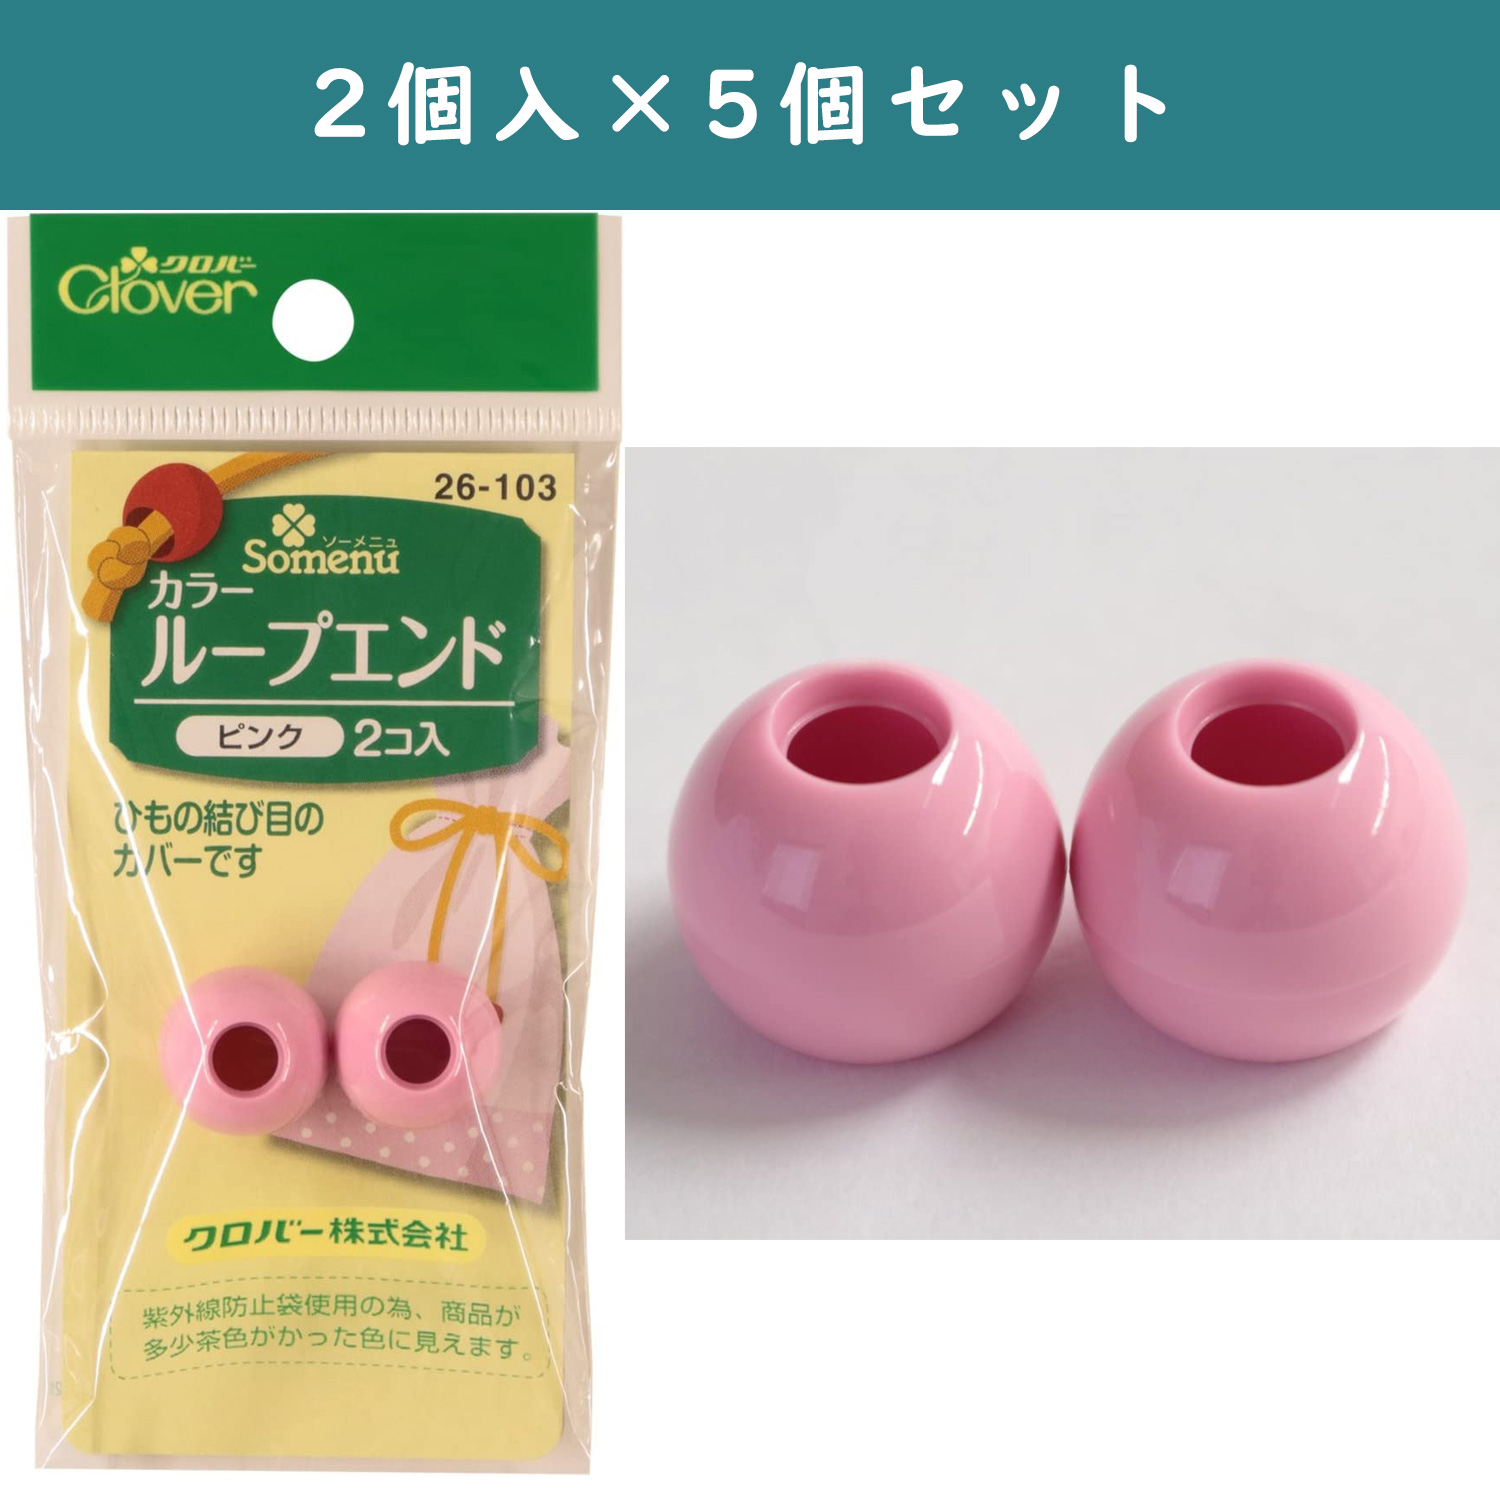 ■【5個】CL26-103-5set カラーループエンド 15mm幅 2個入り ピンク ×5個 (セット)